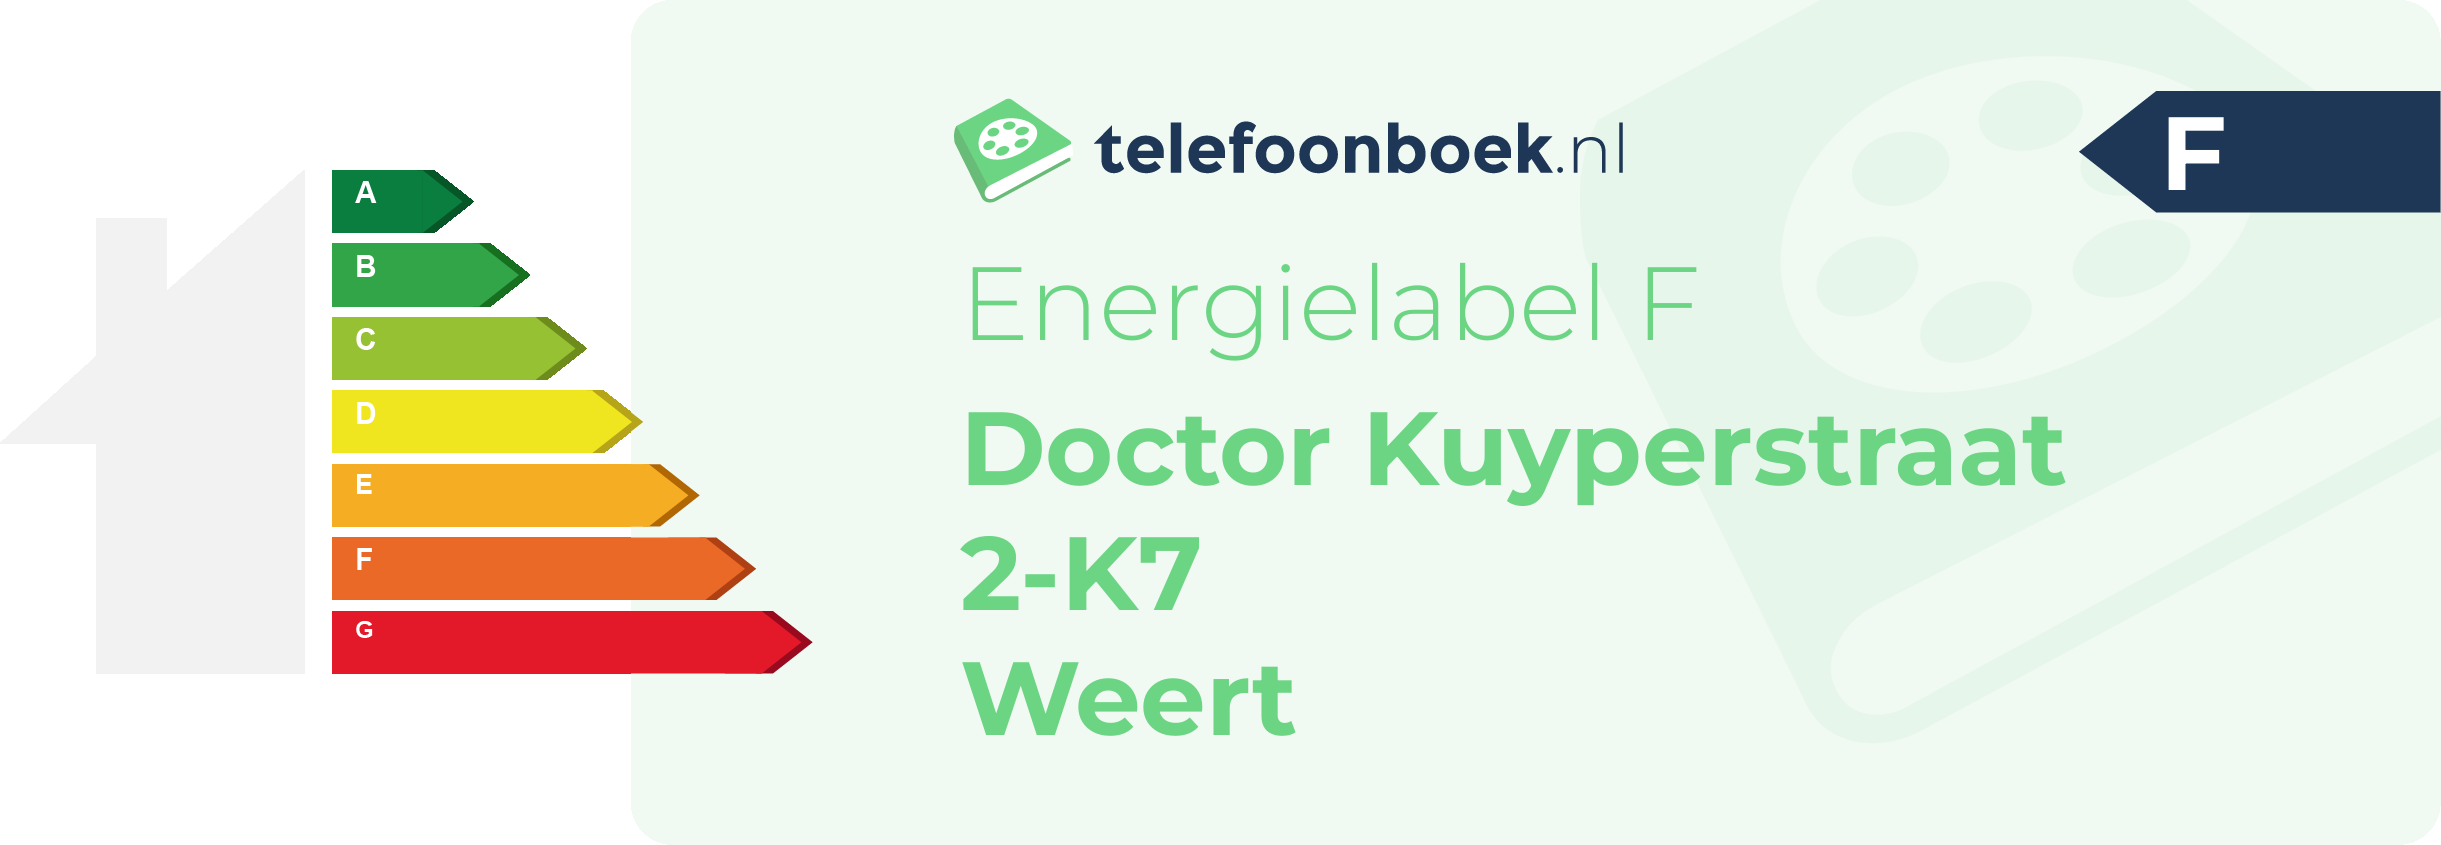 Energielabel Doctor Kuyperstraat 2-K7 Weert